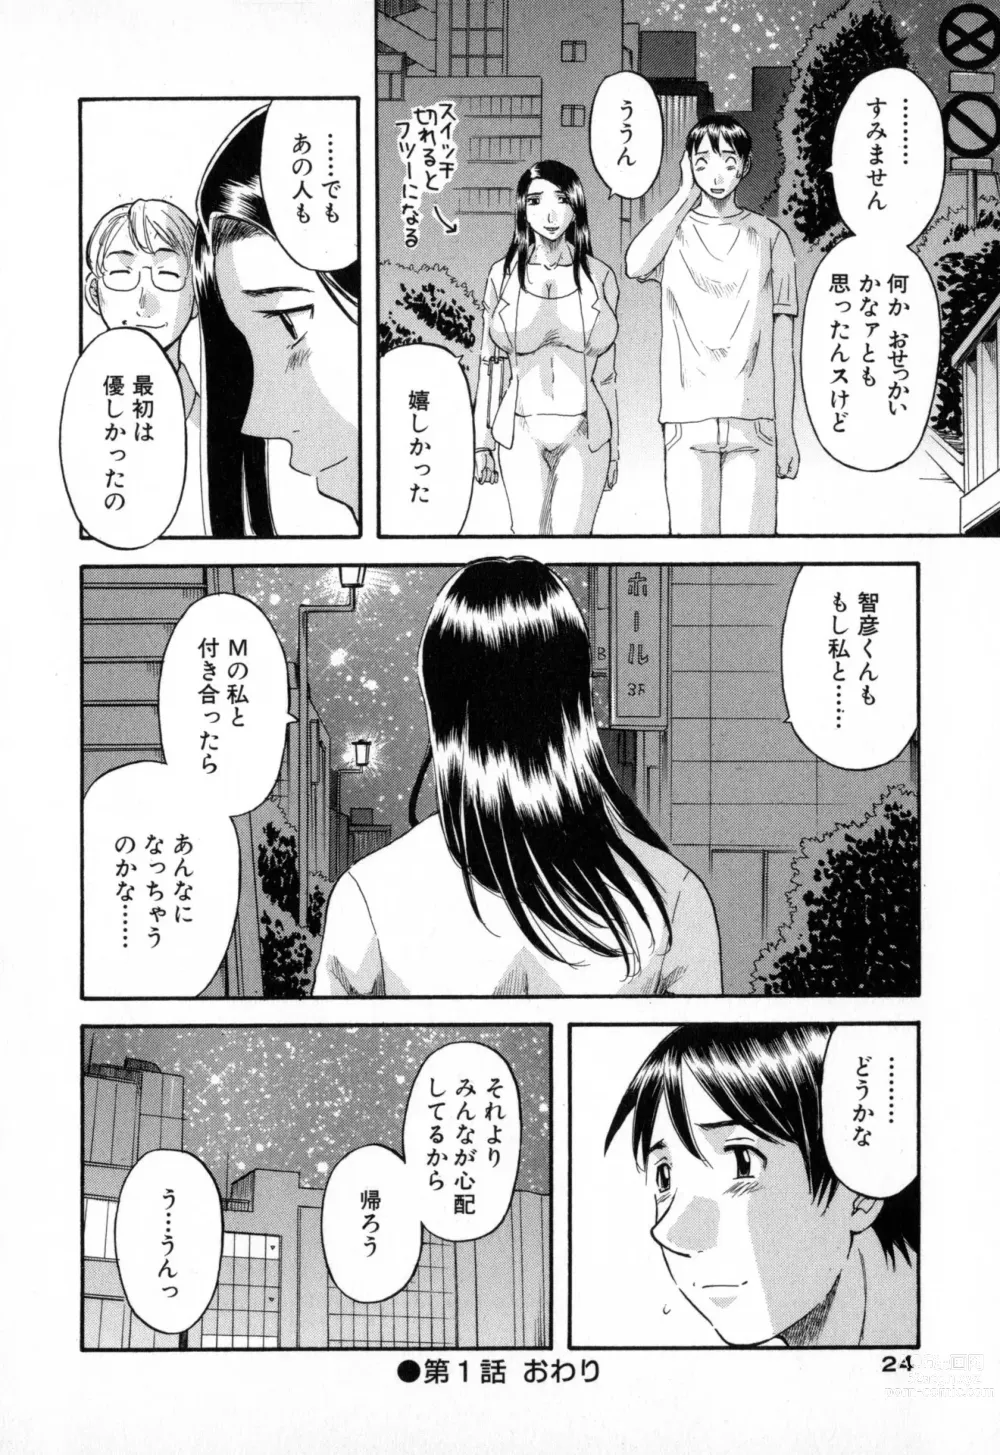 Page 24 of manga Gokuraku Ladies - Paradise Ladies